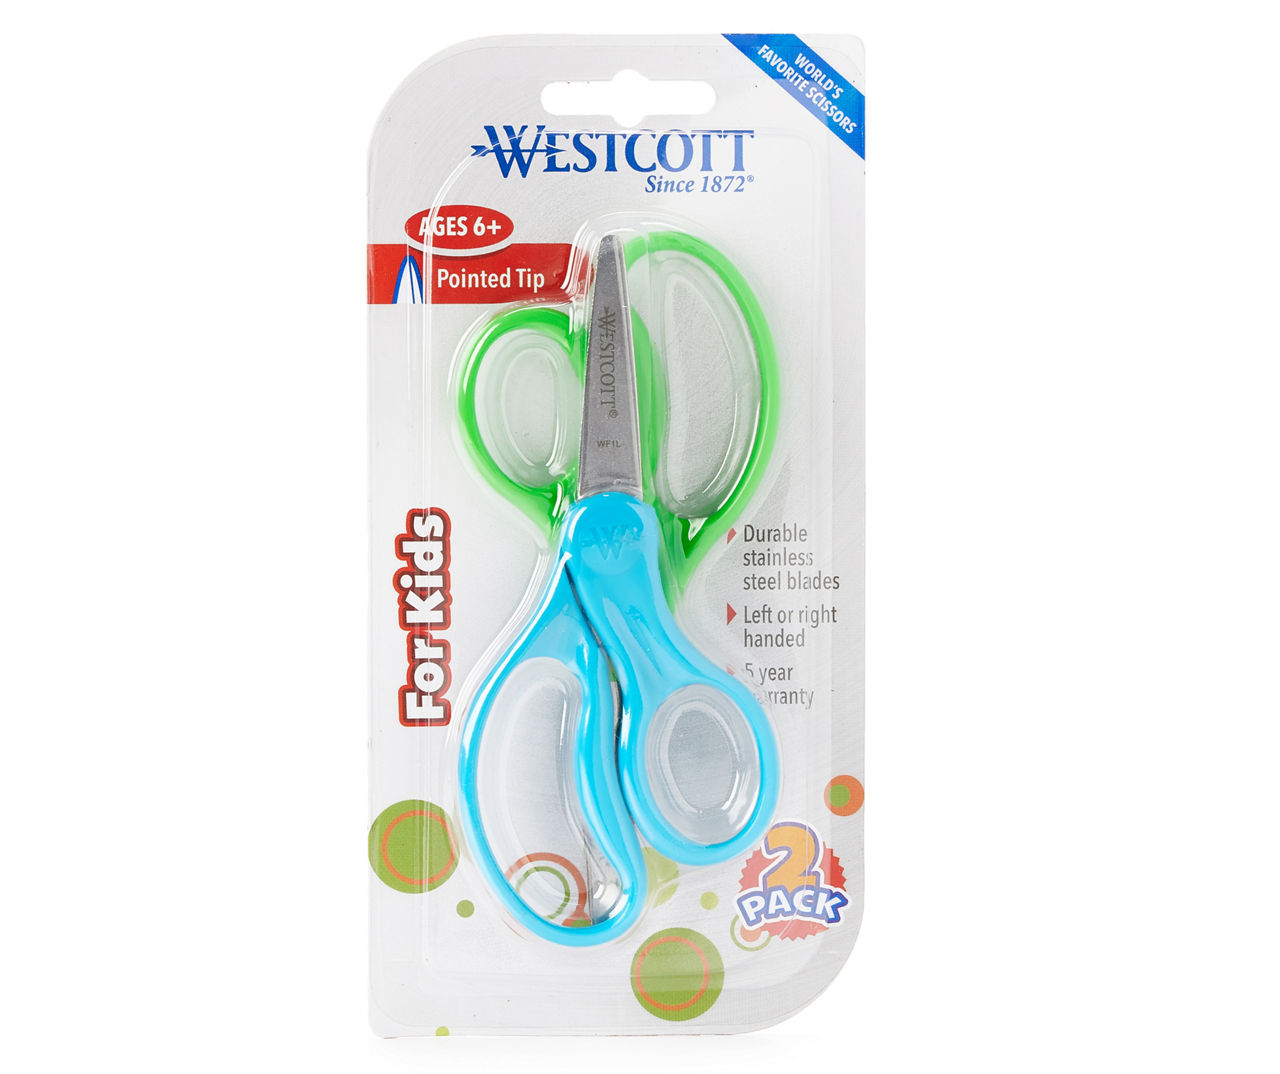 Little scissors for children